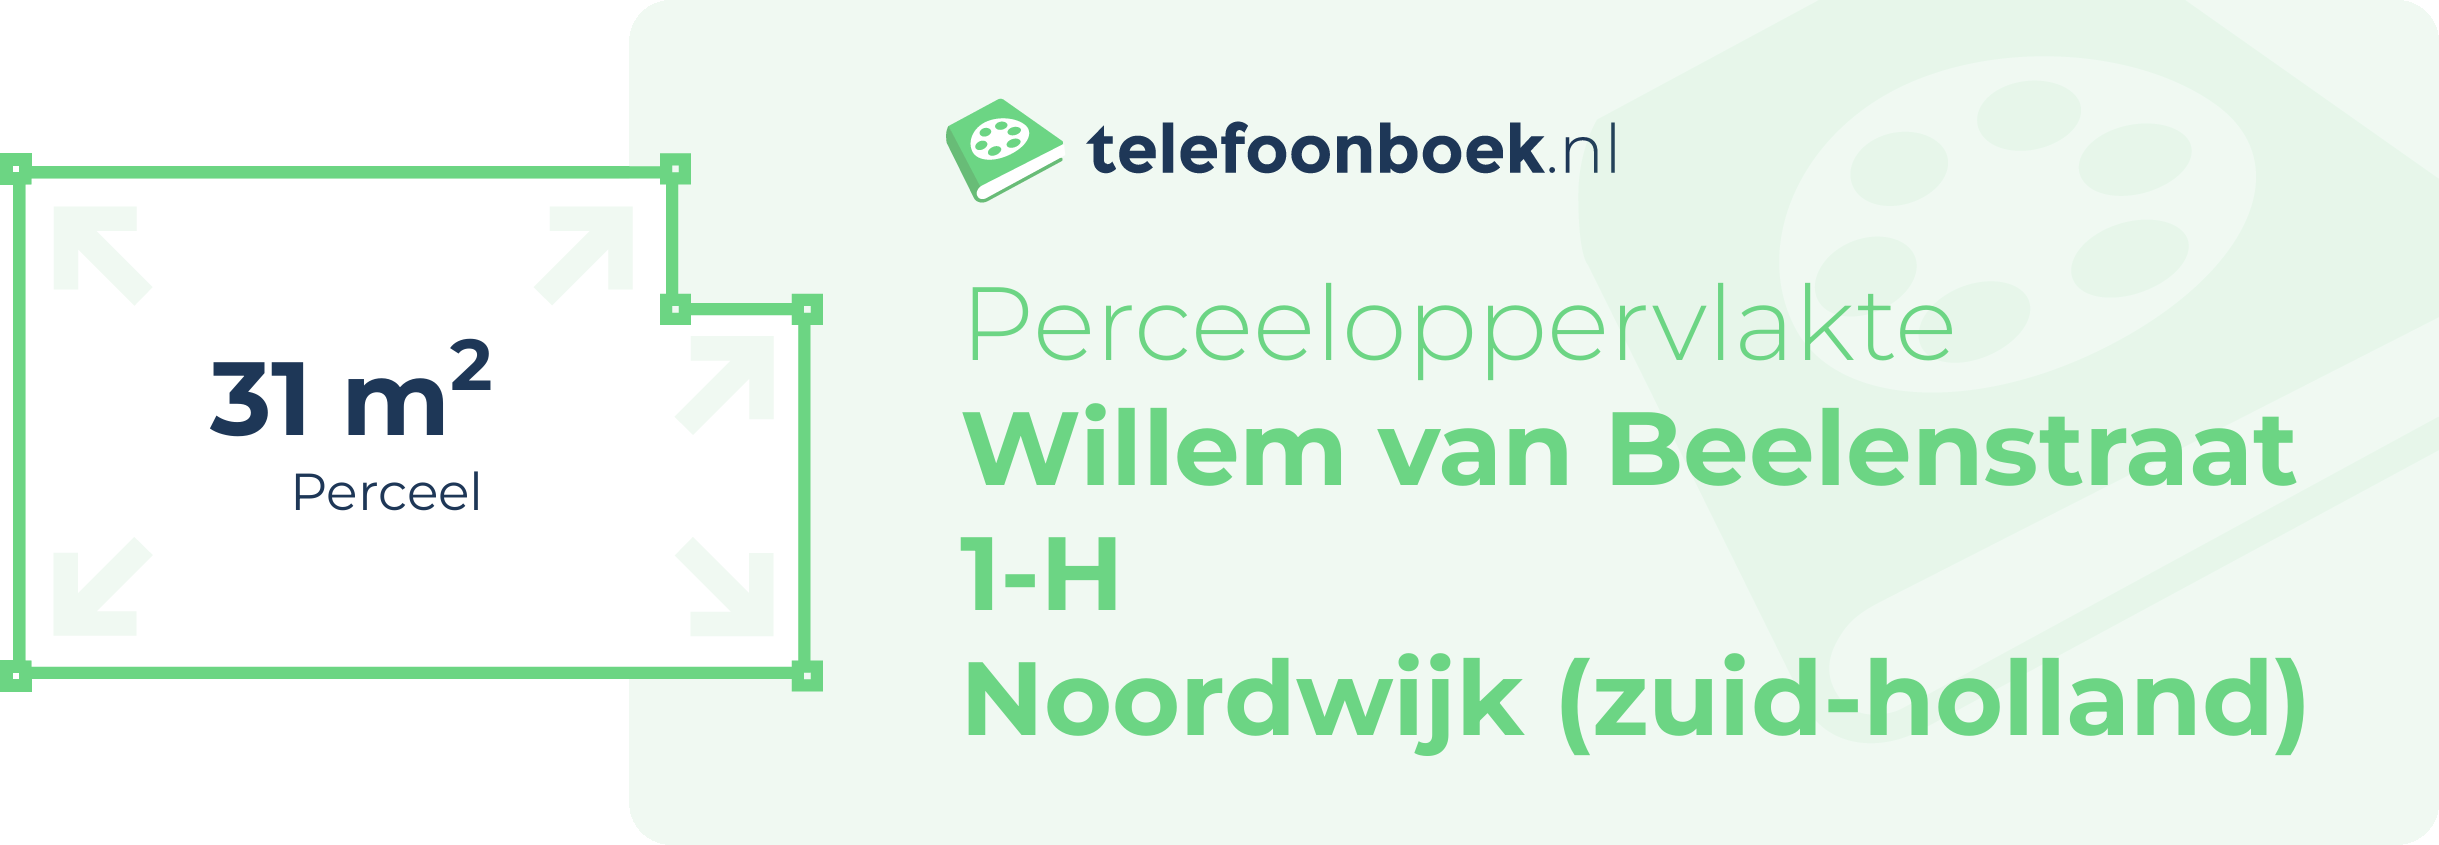 Perceeloppervlakte Willem Van Beelenstraat 1-H Noordwijk (Zuid-Holland)